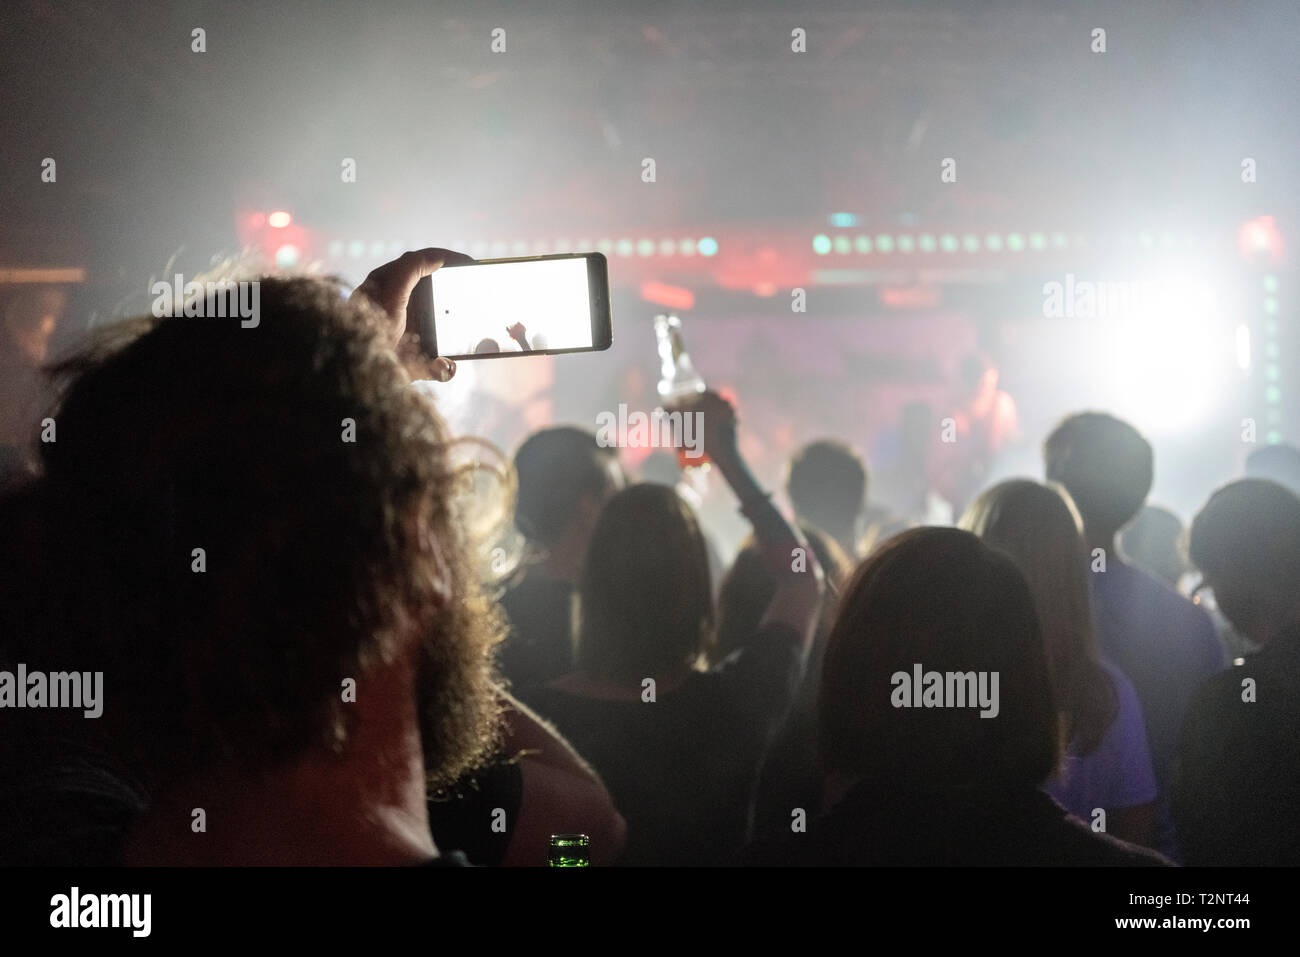 Man taking photograph de concert avec le smartphone Banque D'Images